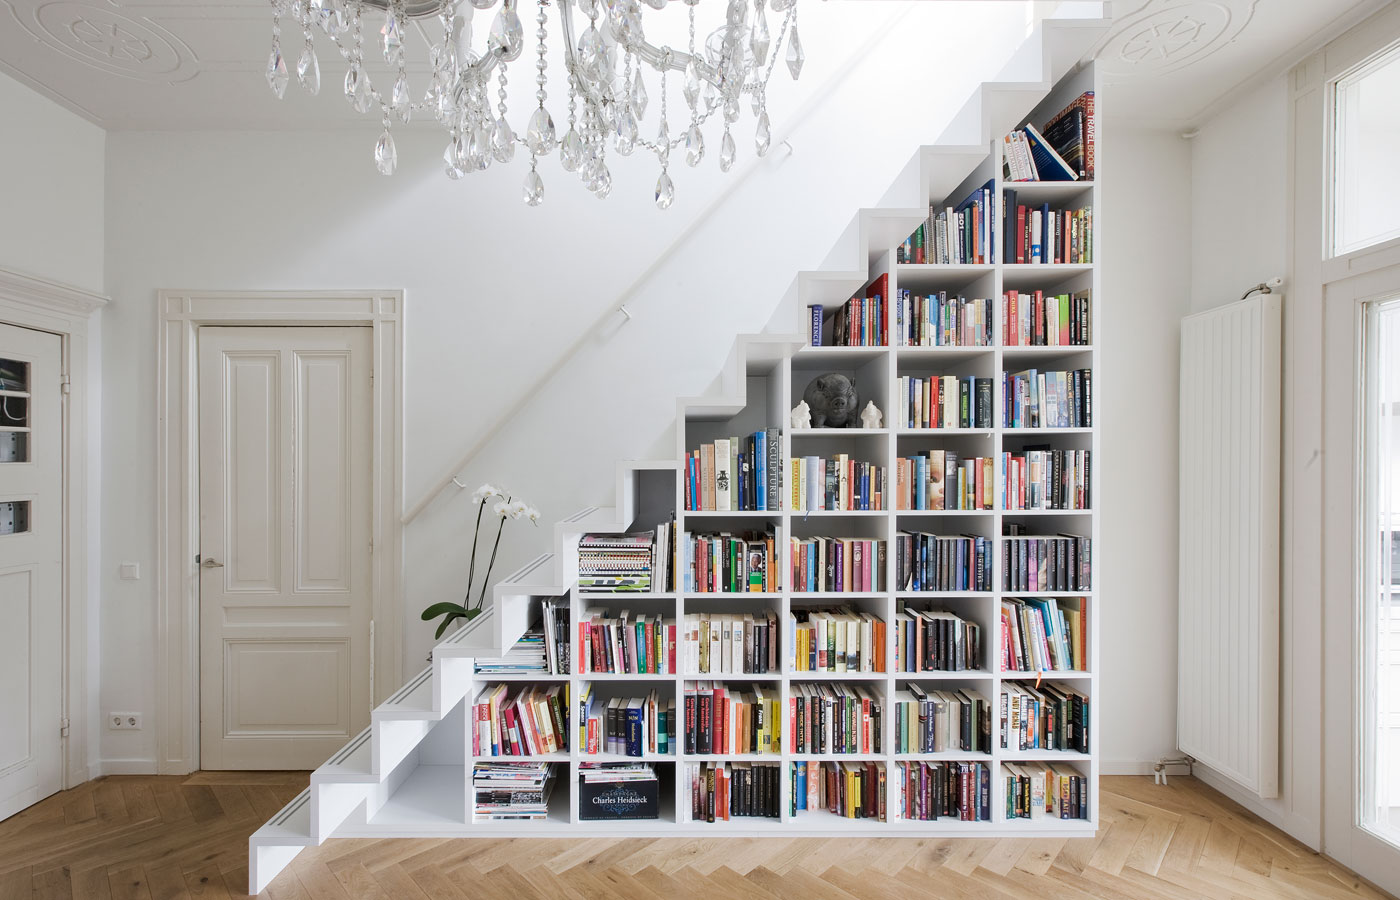 Book Storage In Around Stairs, Built In Bookcase Under Stairs